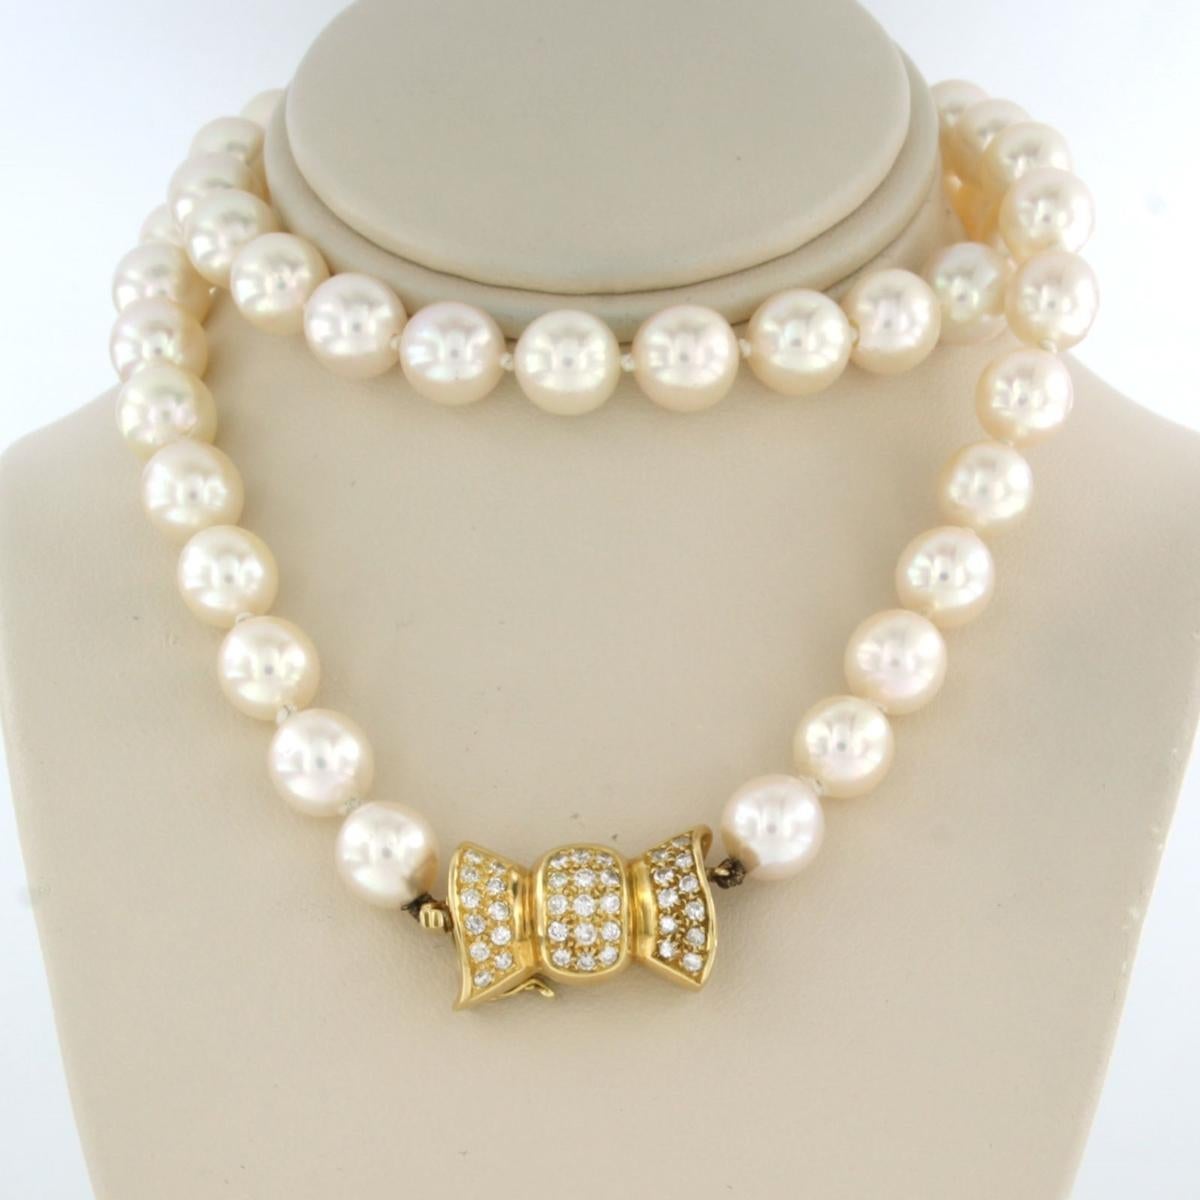 Collier de perles avec fermoir en or jaune 18k serti de diamants taille brillant jusqu'à. 0,37 ct - G/H - SI - 50 cm

description détaillée :

la longueur du collier est de 50 cm

les dimensions de la serrure sont de 2,0 cm sur 1,2 cm de large

le